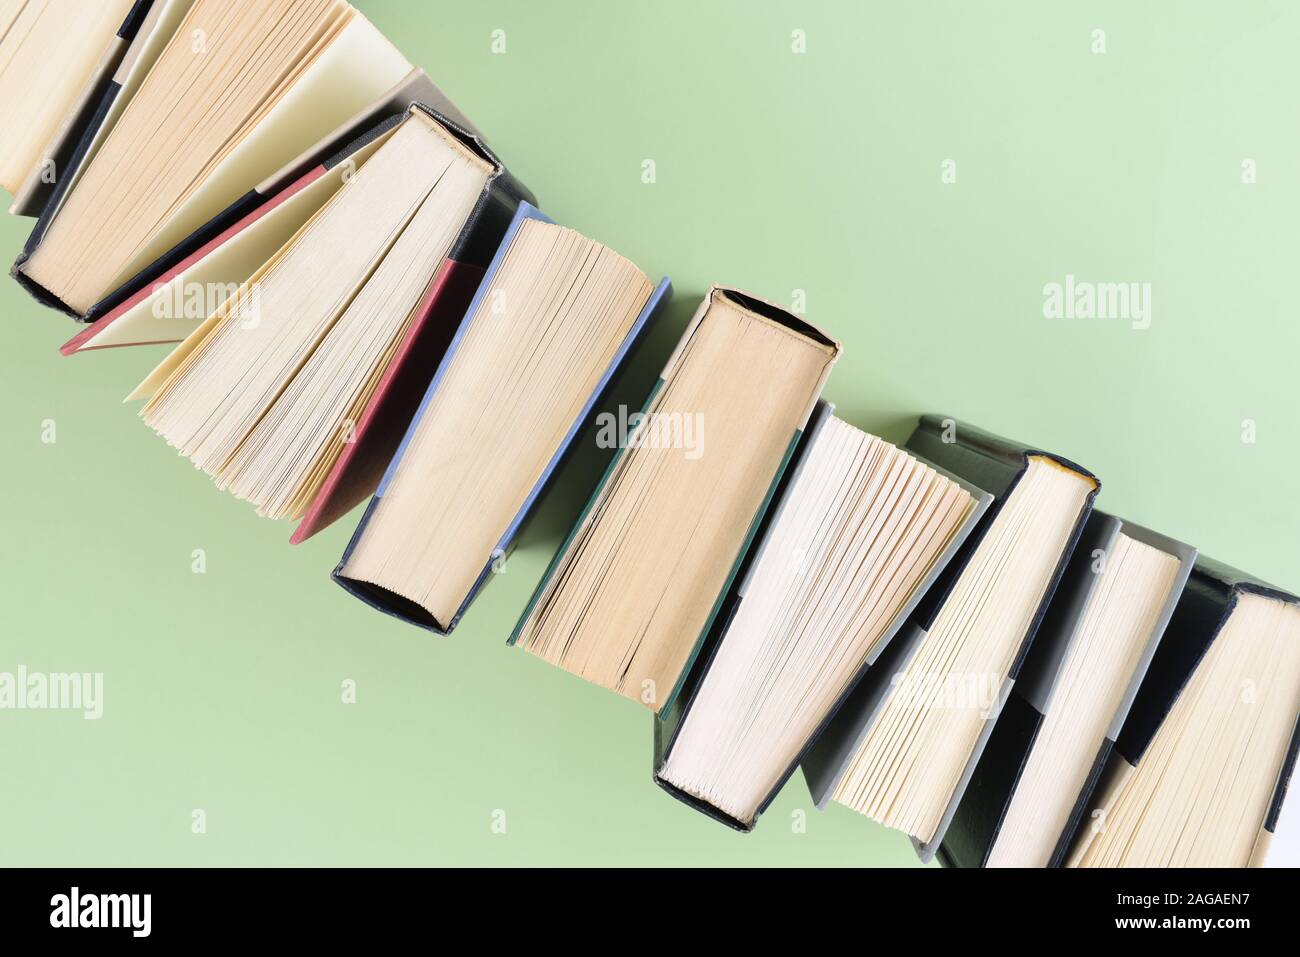 Eine Linie der Bücher stehen auf Ende in einem Winkel bilden eine Ecke des Rahmens in die entgegengesetzte Ecke läuft, auf einem hellgrünen Hintergrund. Stockfoto